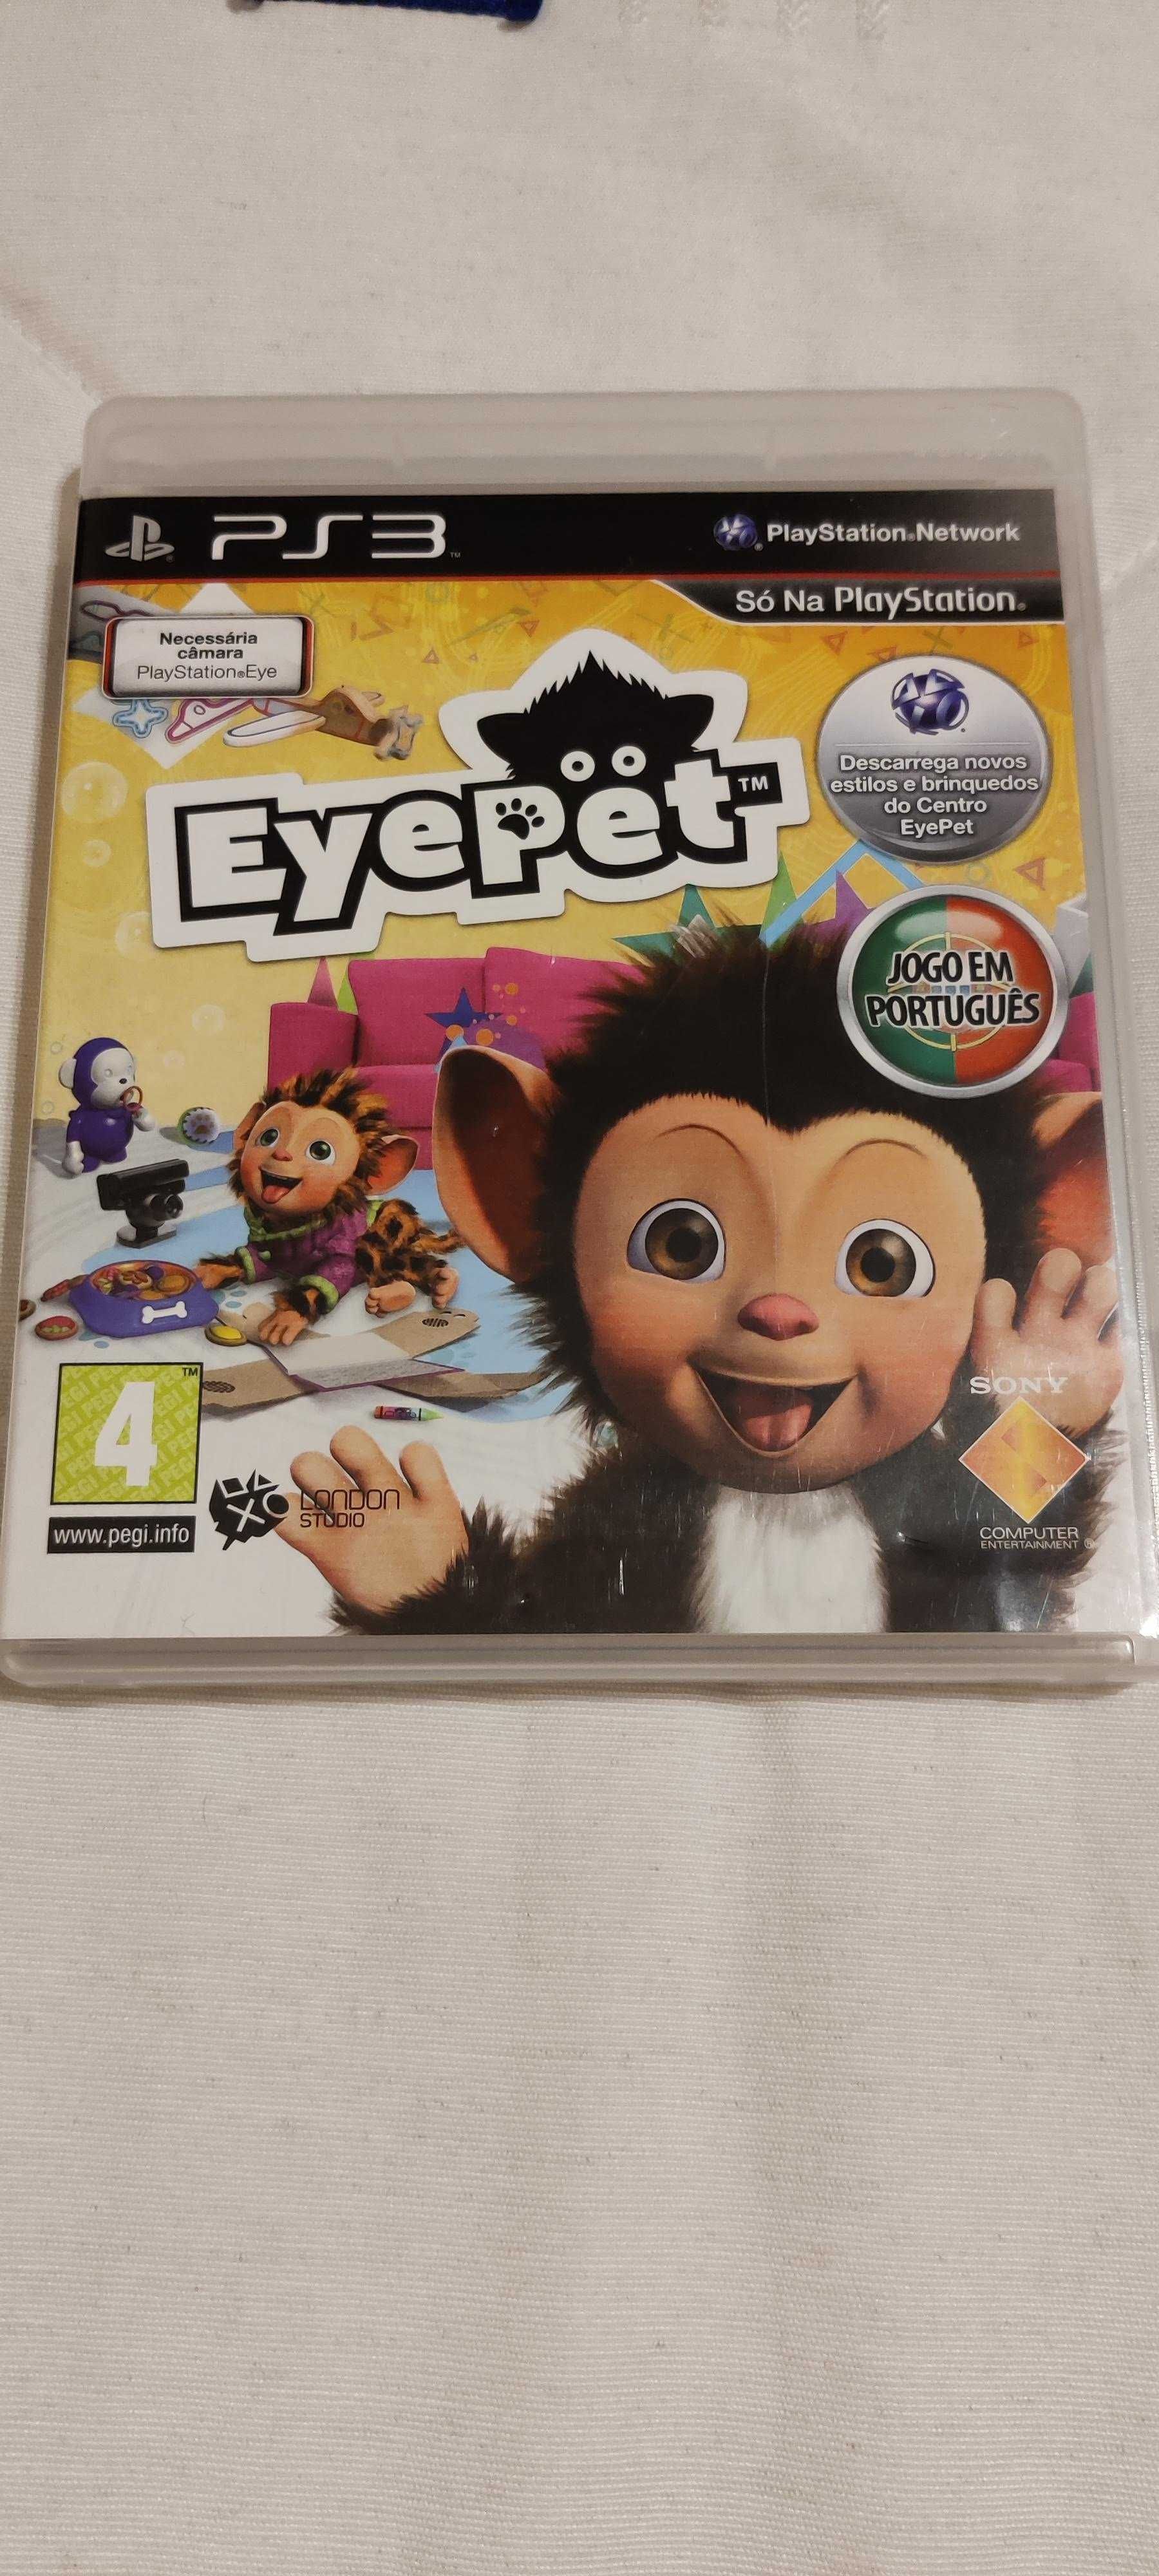 Jogo Eye Pet para Playstation3 como novo